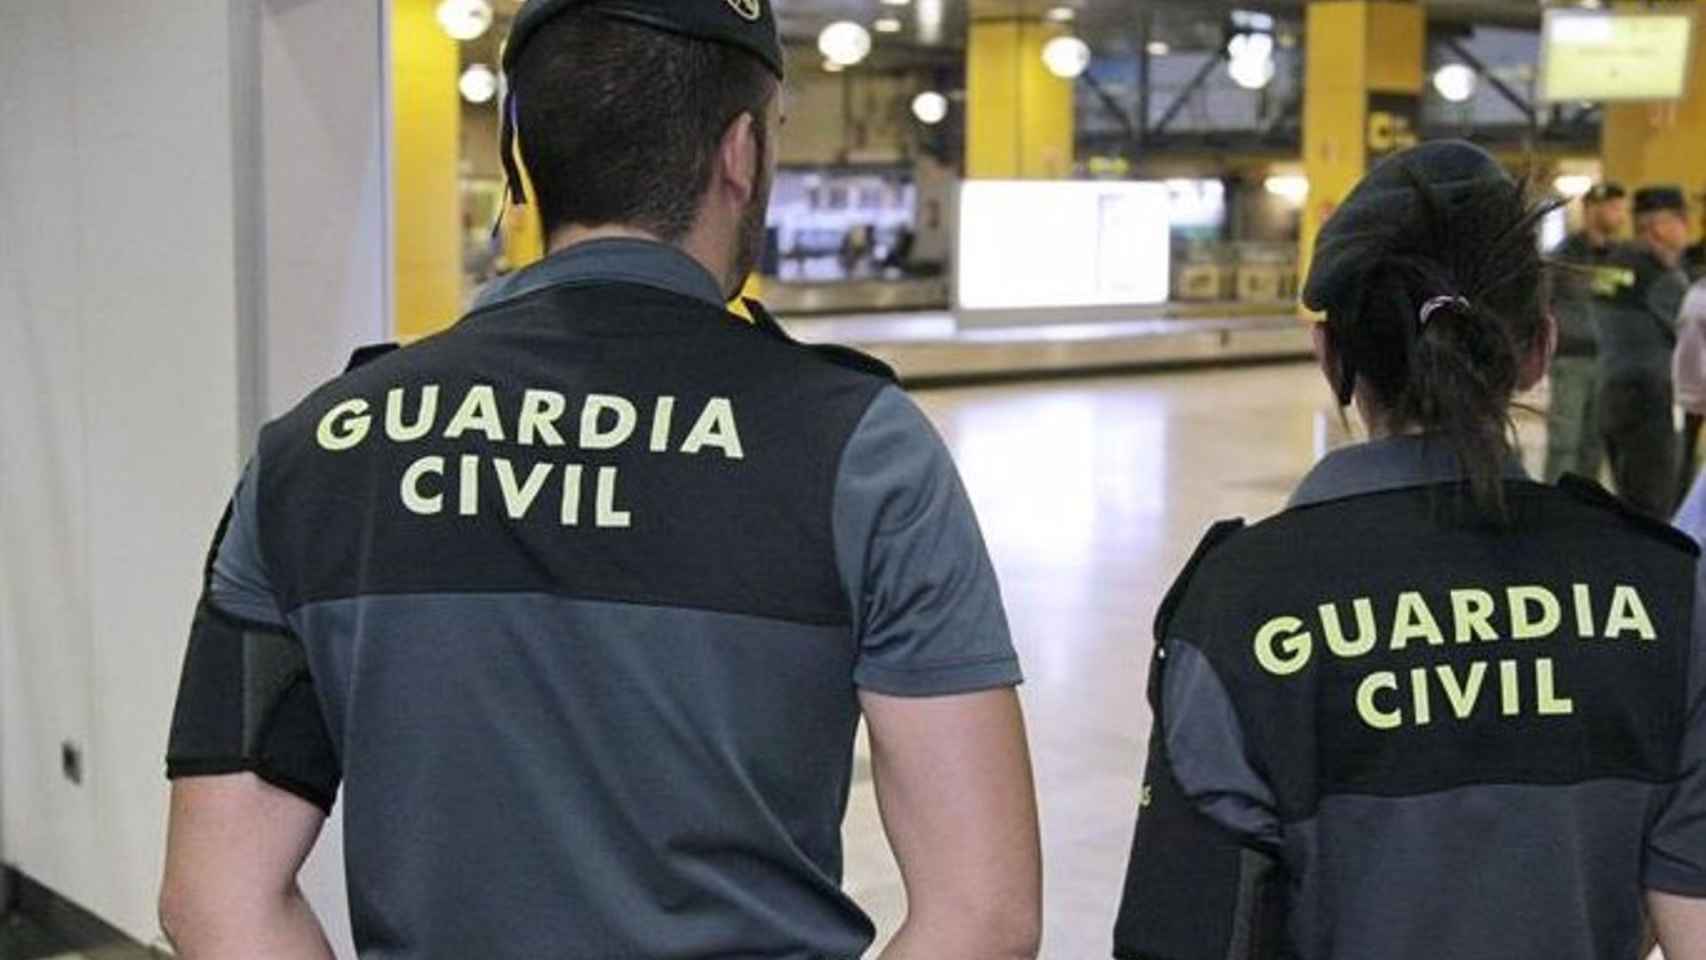 Agentes de la Guardia Civil en el aeropuerto de Málaga.